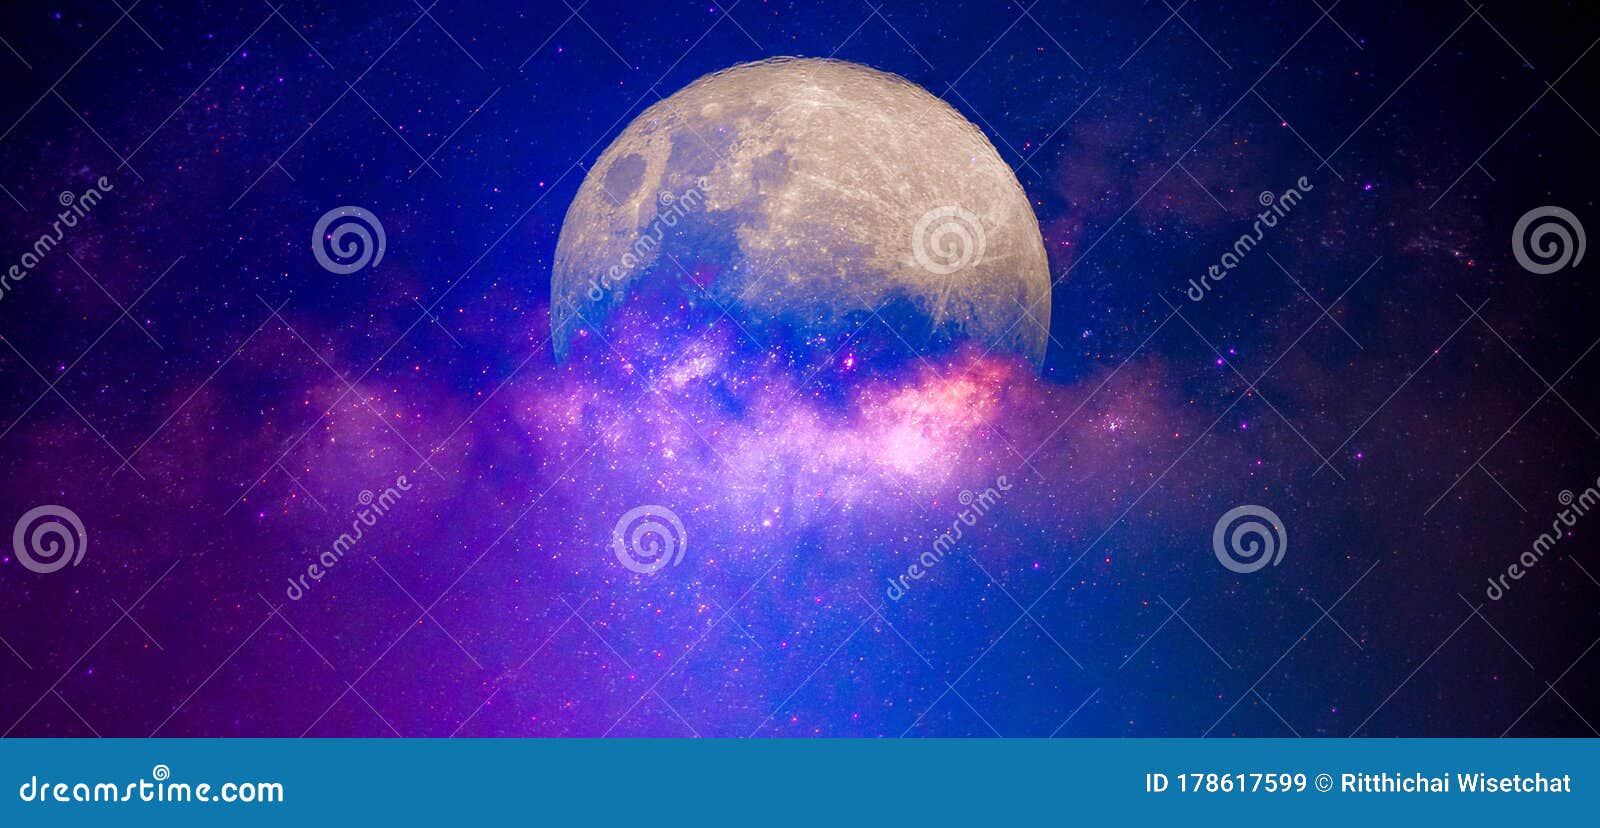 Sao trăng là sự kết hợp tuyệt vời giữa ánh sáng rực rỡ của các vì sao và vẻ đẹp của mặt trăng. Hình ảnh này sẽ khiến bạn say đắm trong vẻ đẹp của thiên nhiên và cảm thấy yên bình, an lạc.